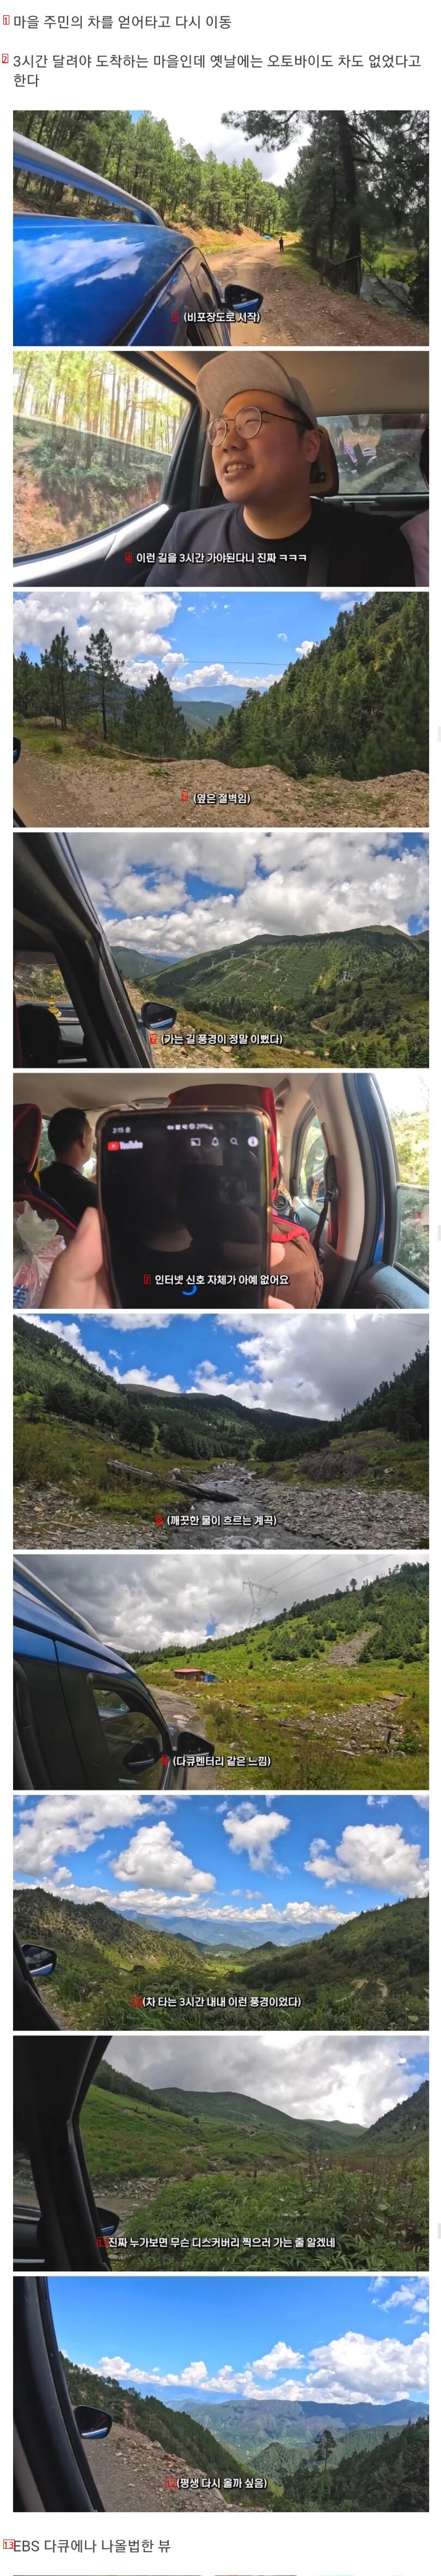 중국의 깊은 오지 시골 마을을 방문한 여행 유튜버